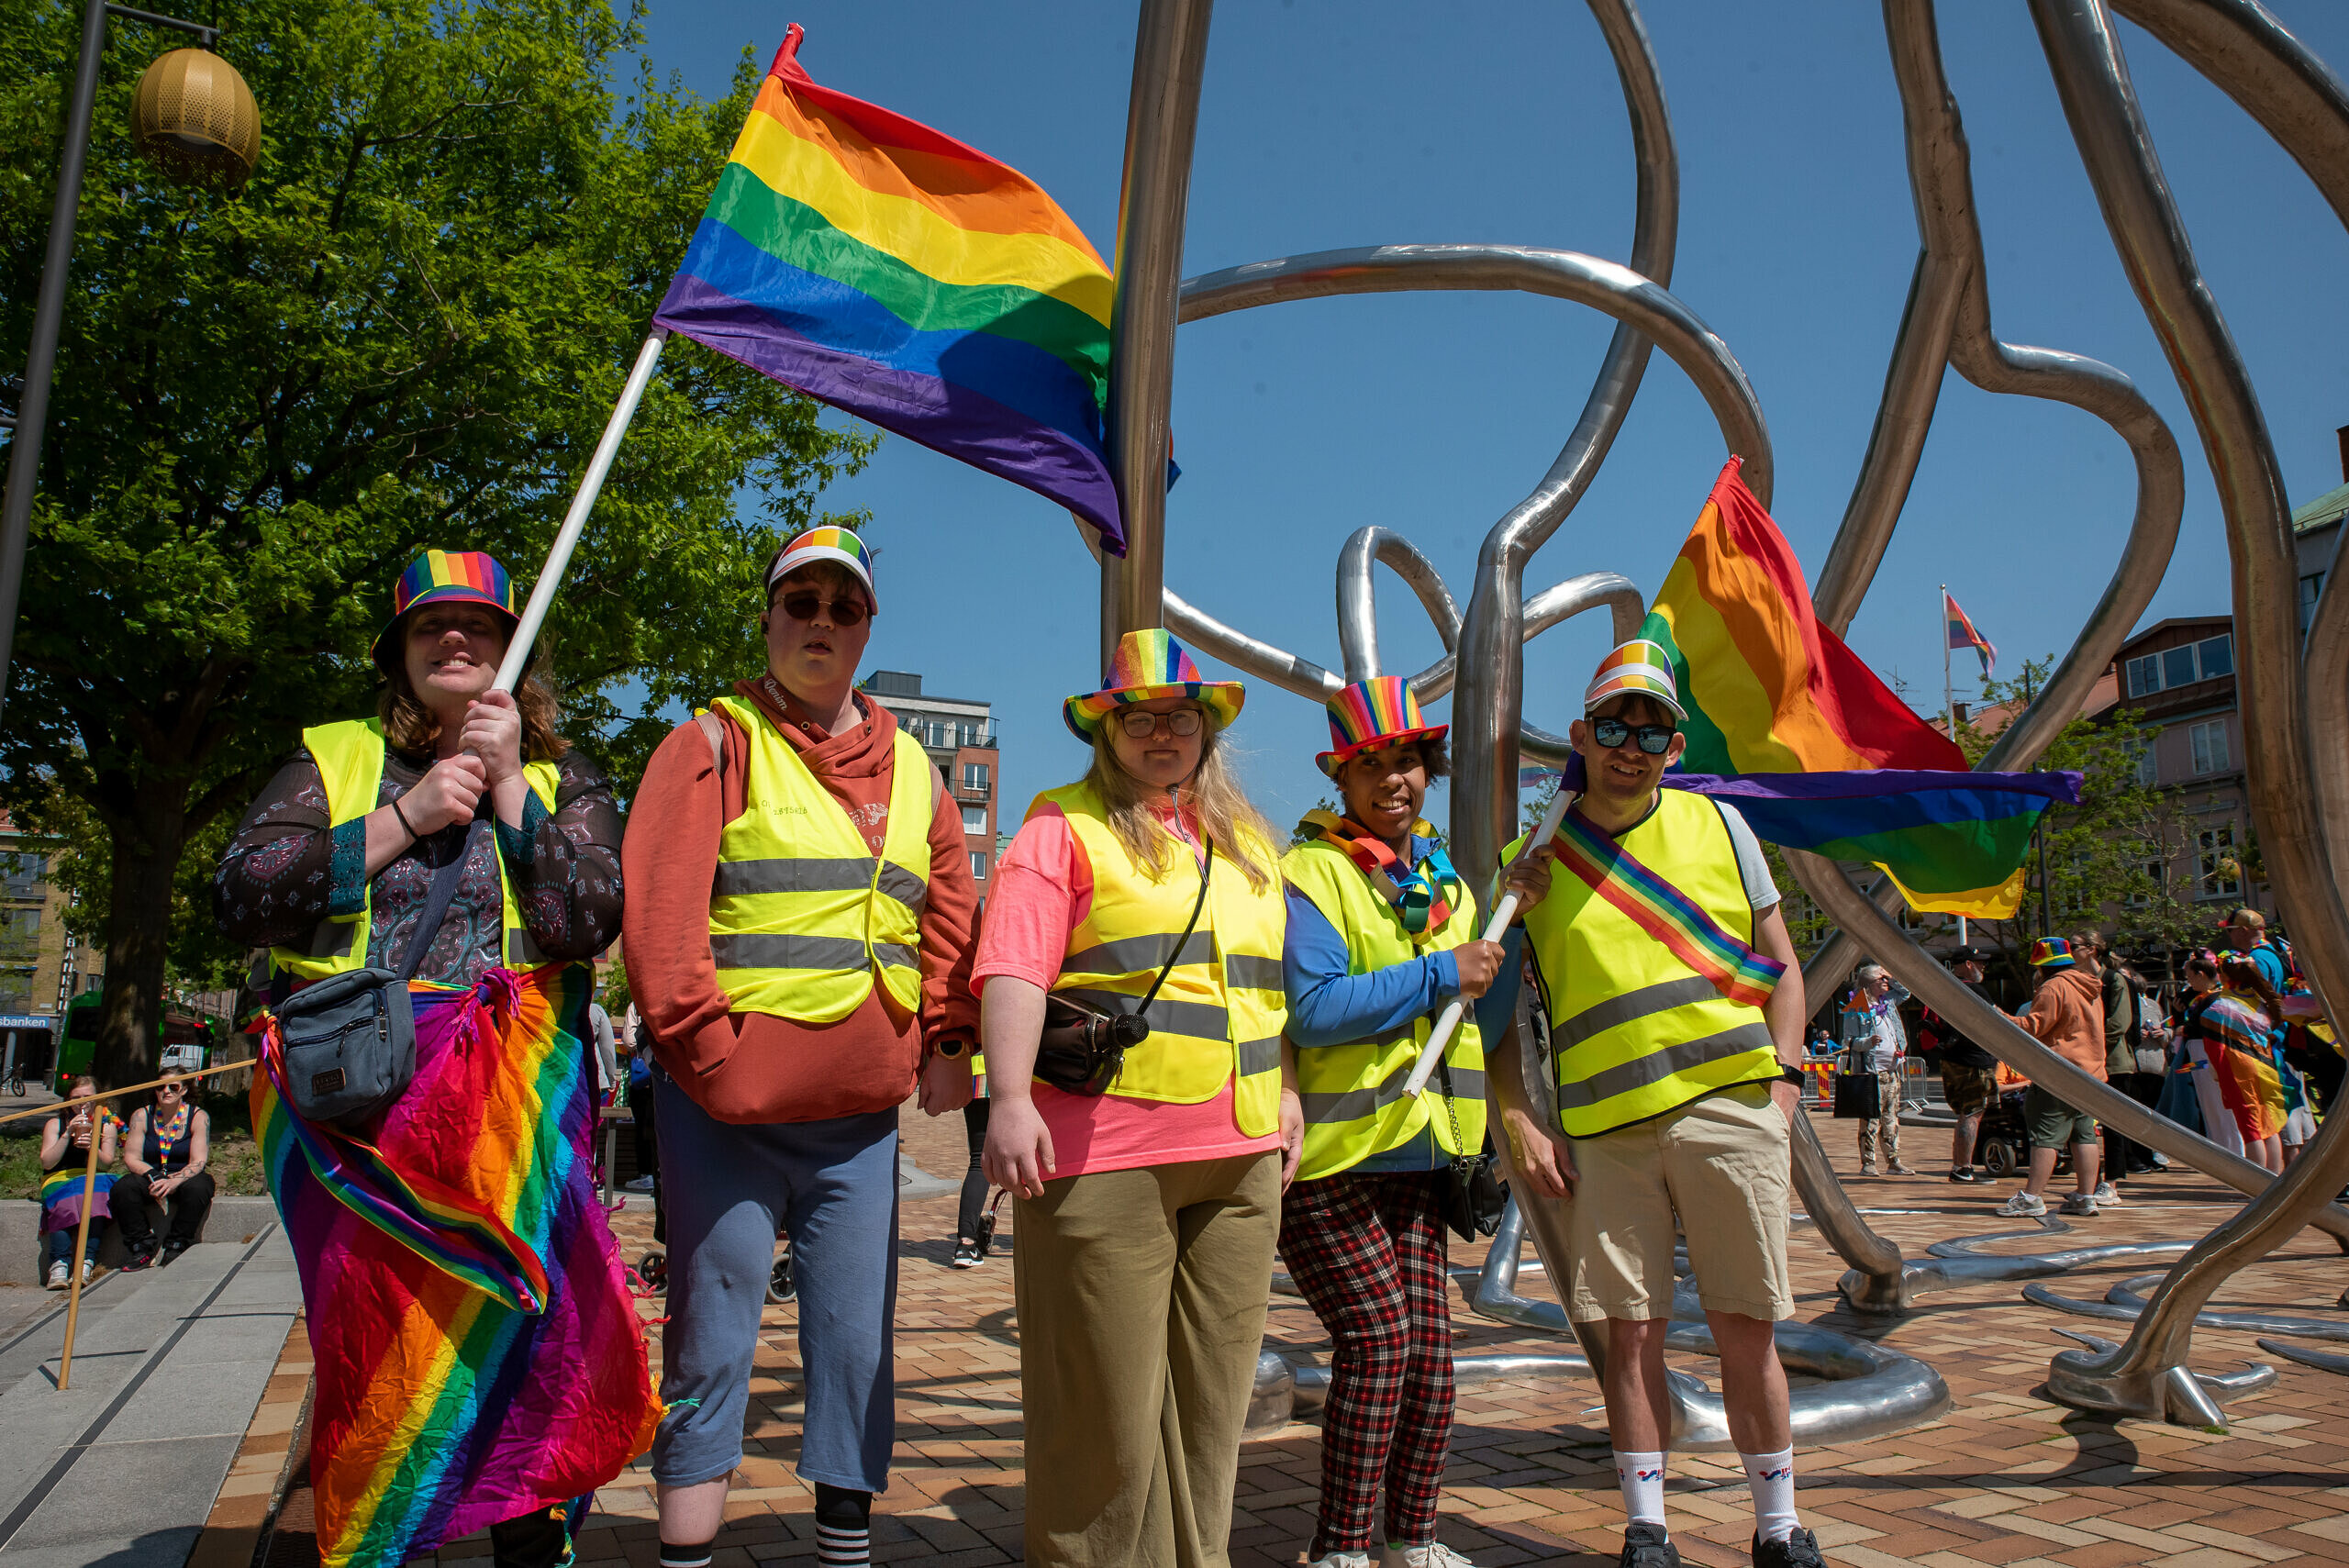 Fem personer står tillsammans på ett torg och håller i två flaggor med regnbågsfärger.